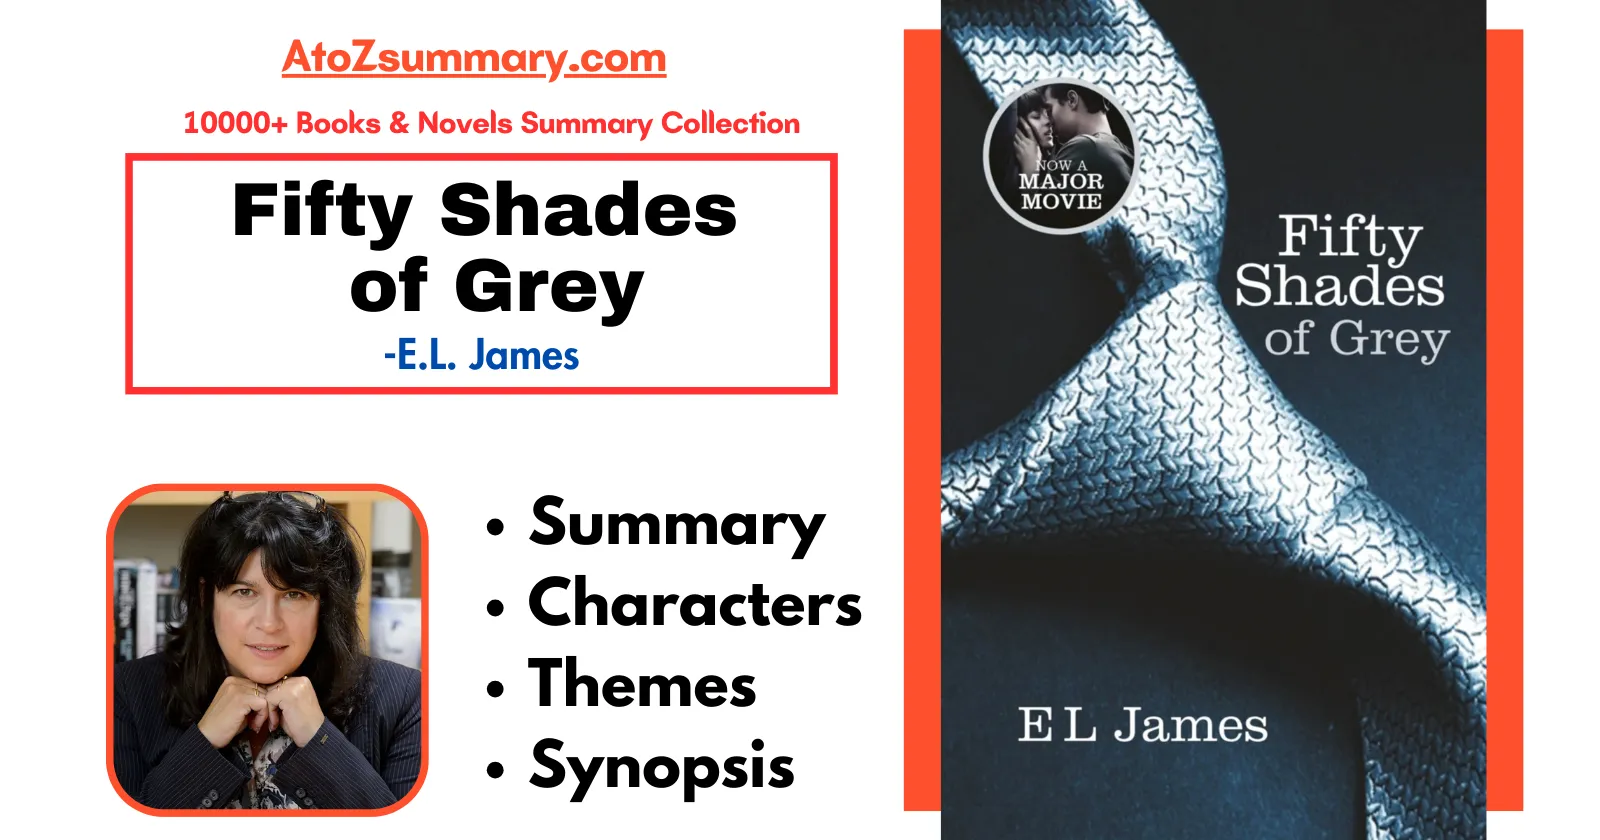 Fifty Shades of Grey summary